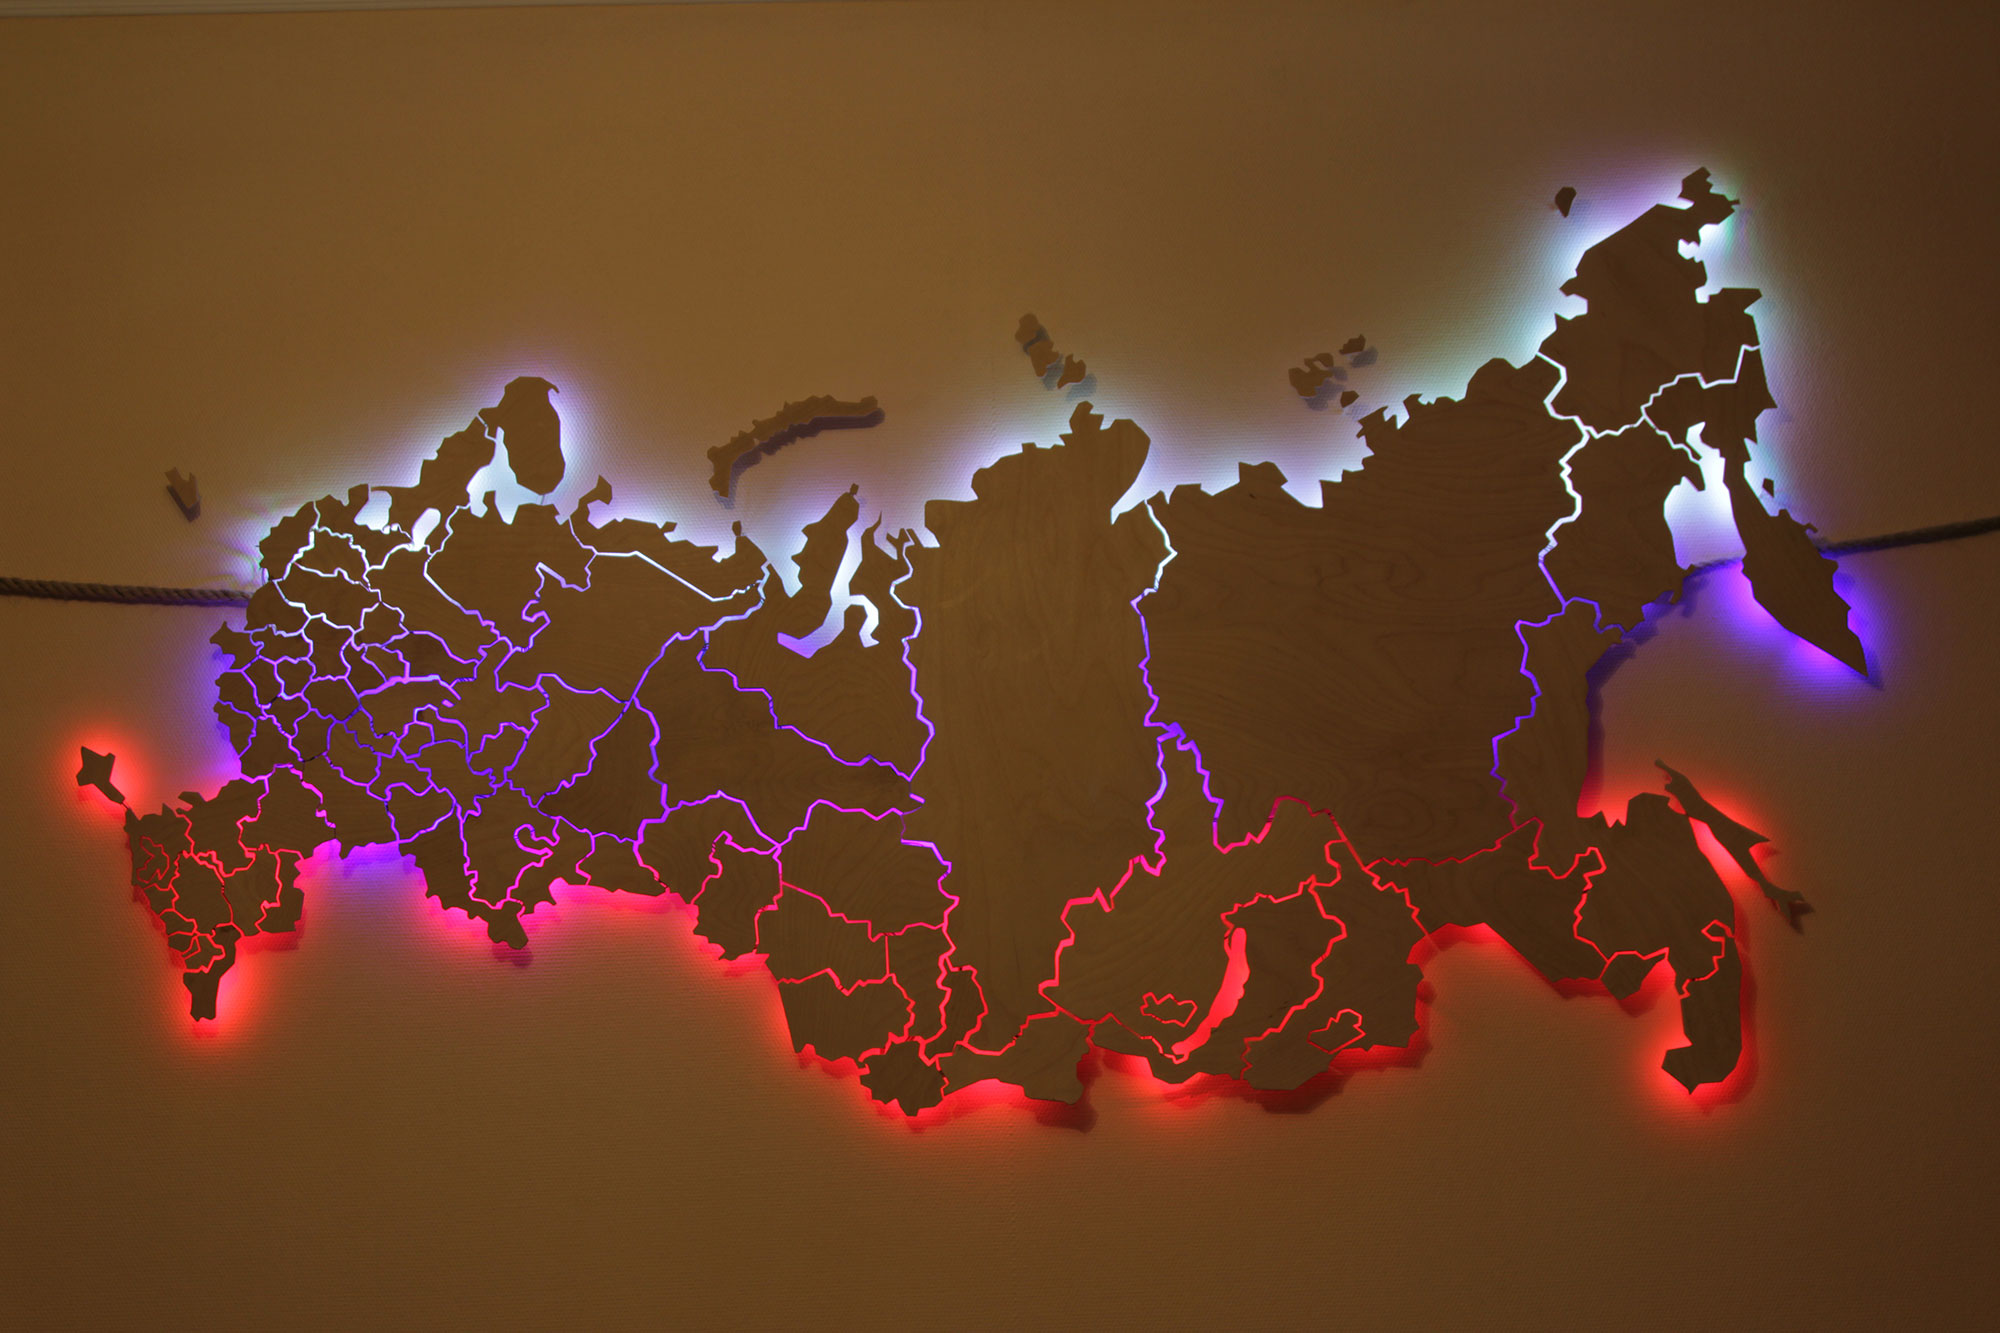 Карта России красивая